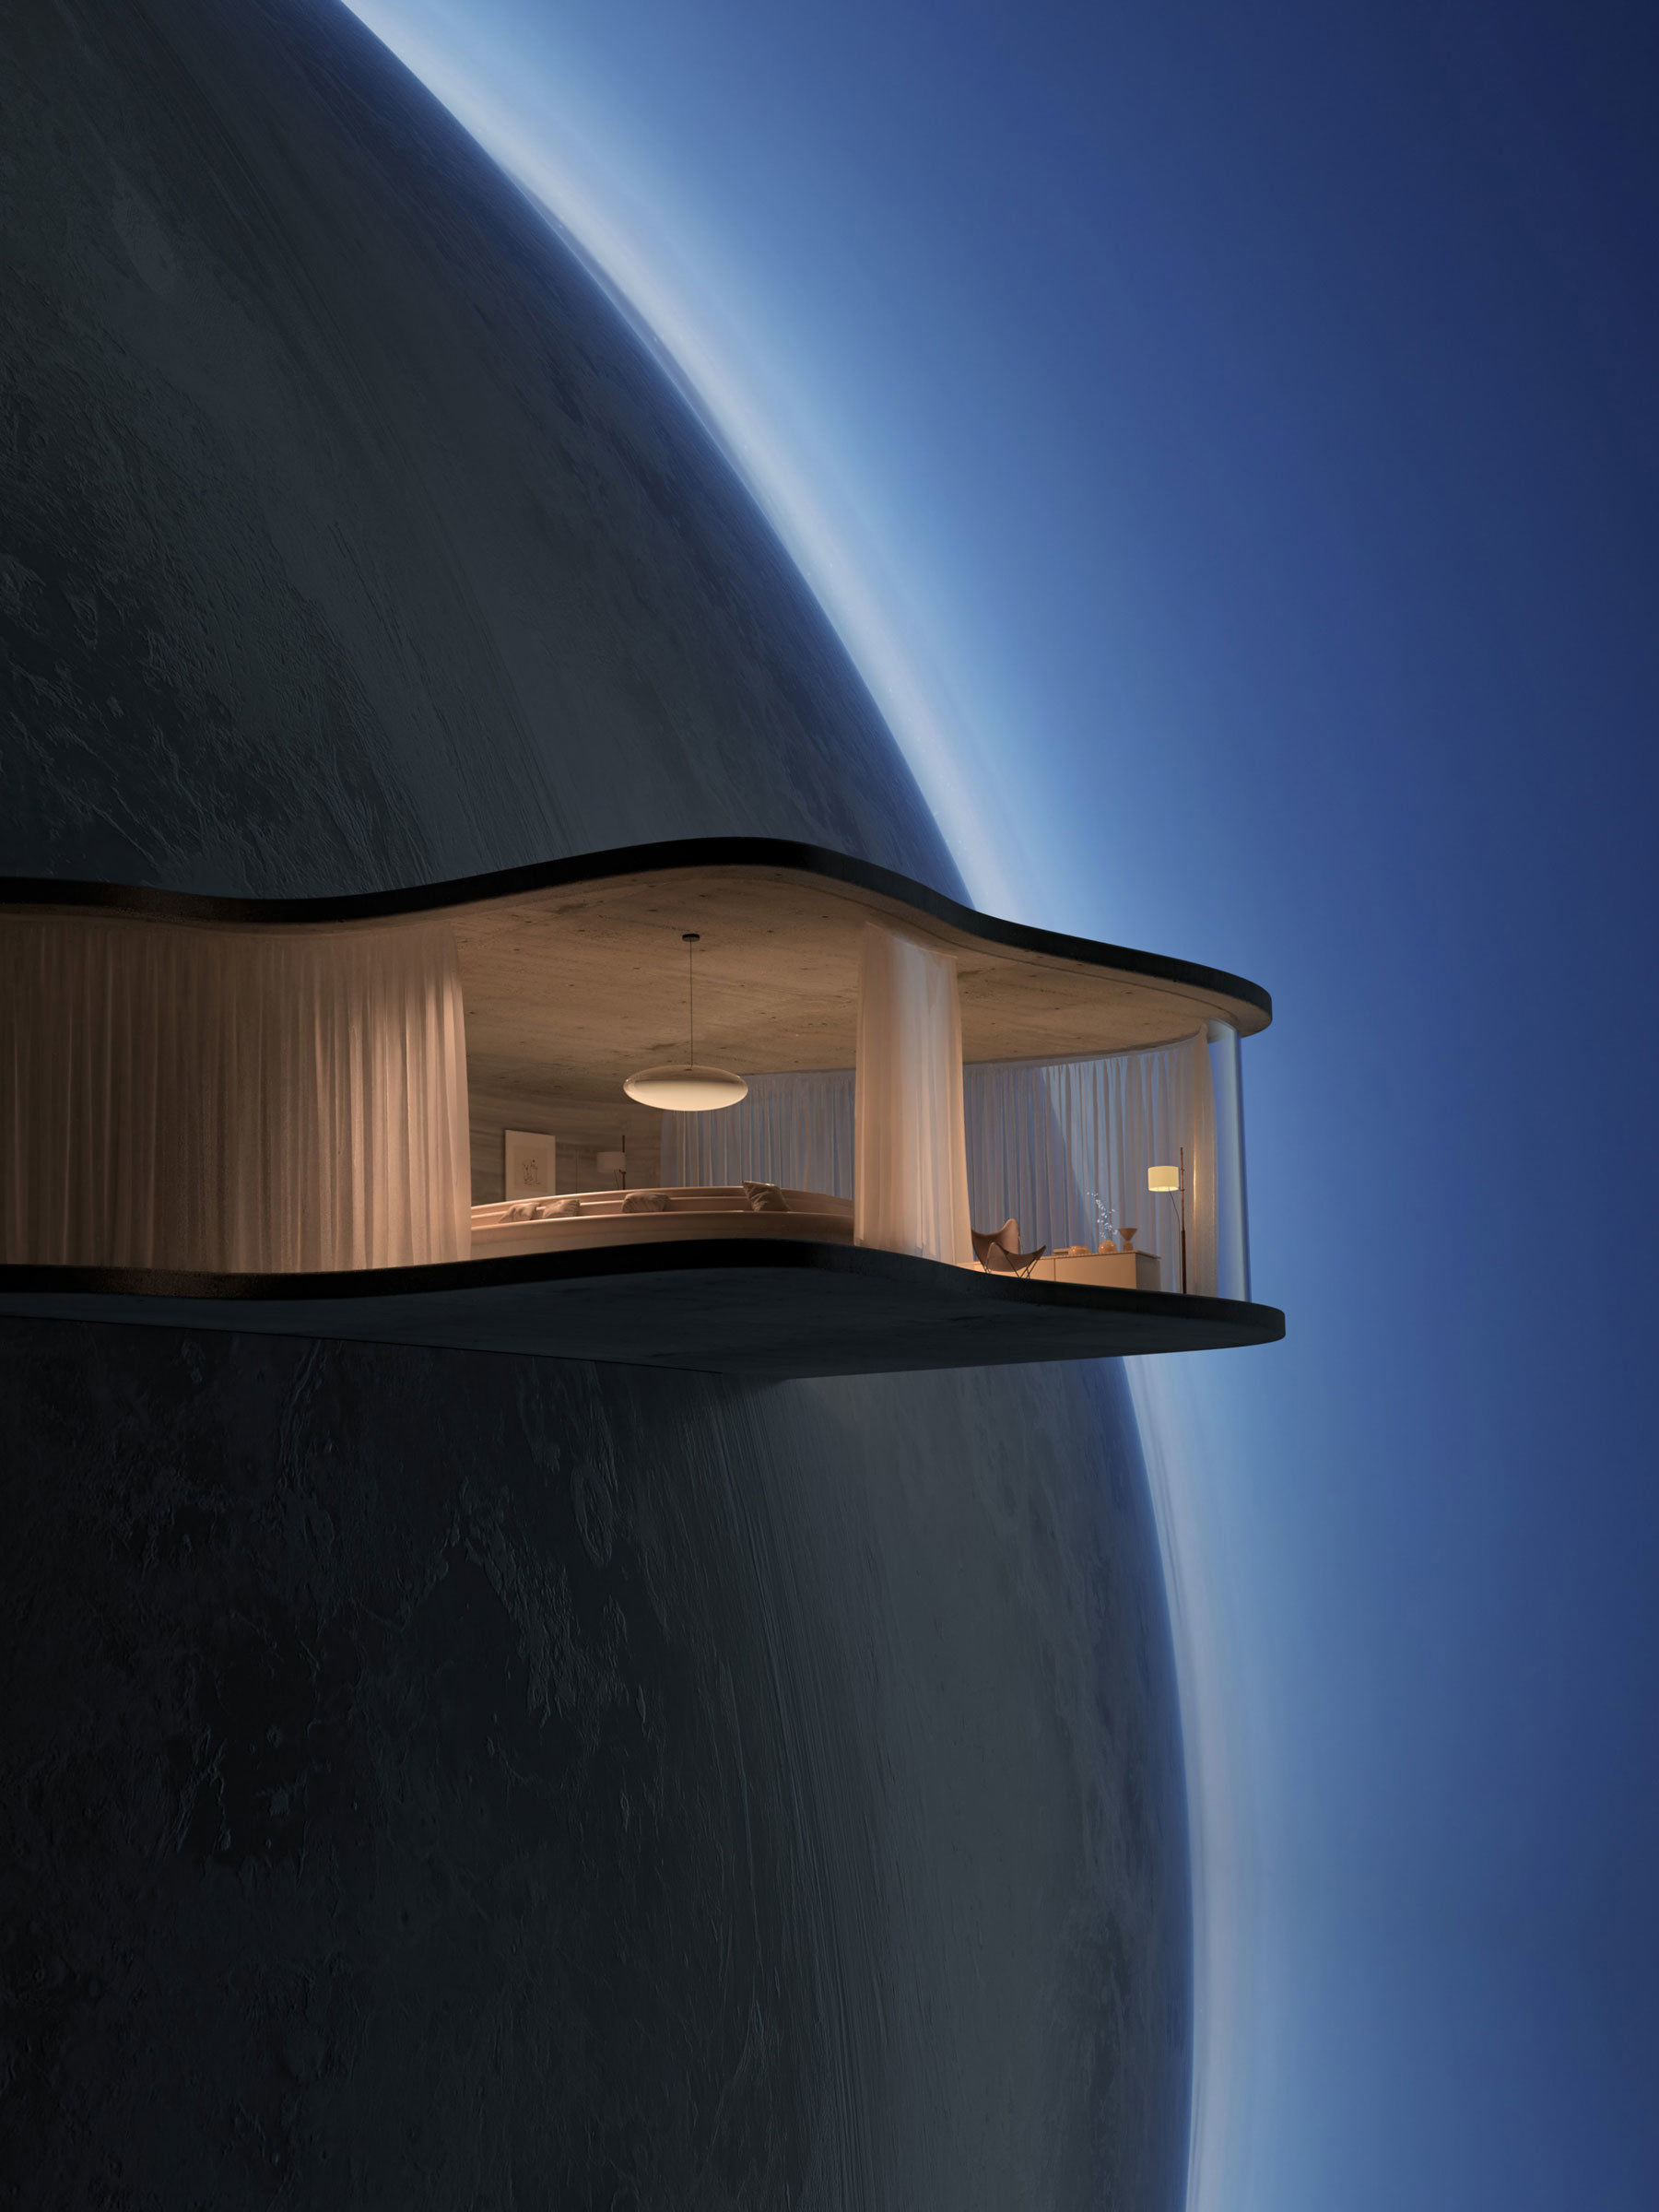 What if? es un diseño digital de cómo podrían ser nuestros hogares si viviéramos en el espacio.